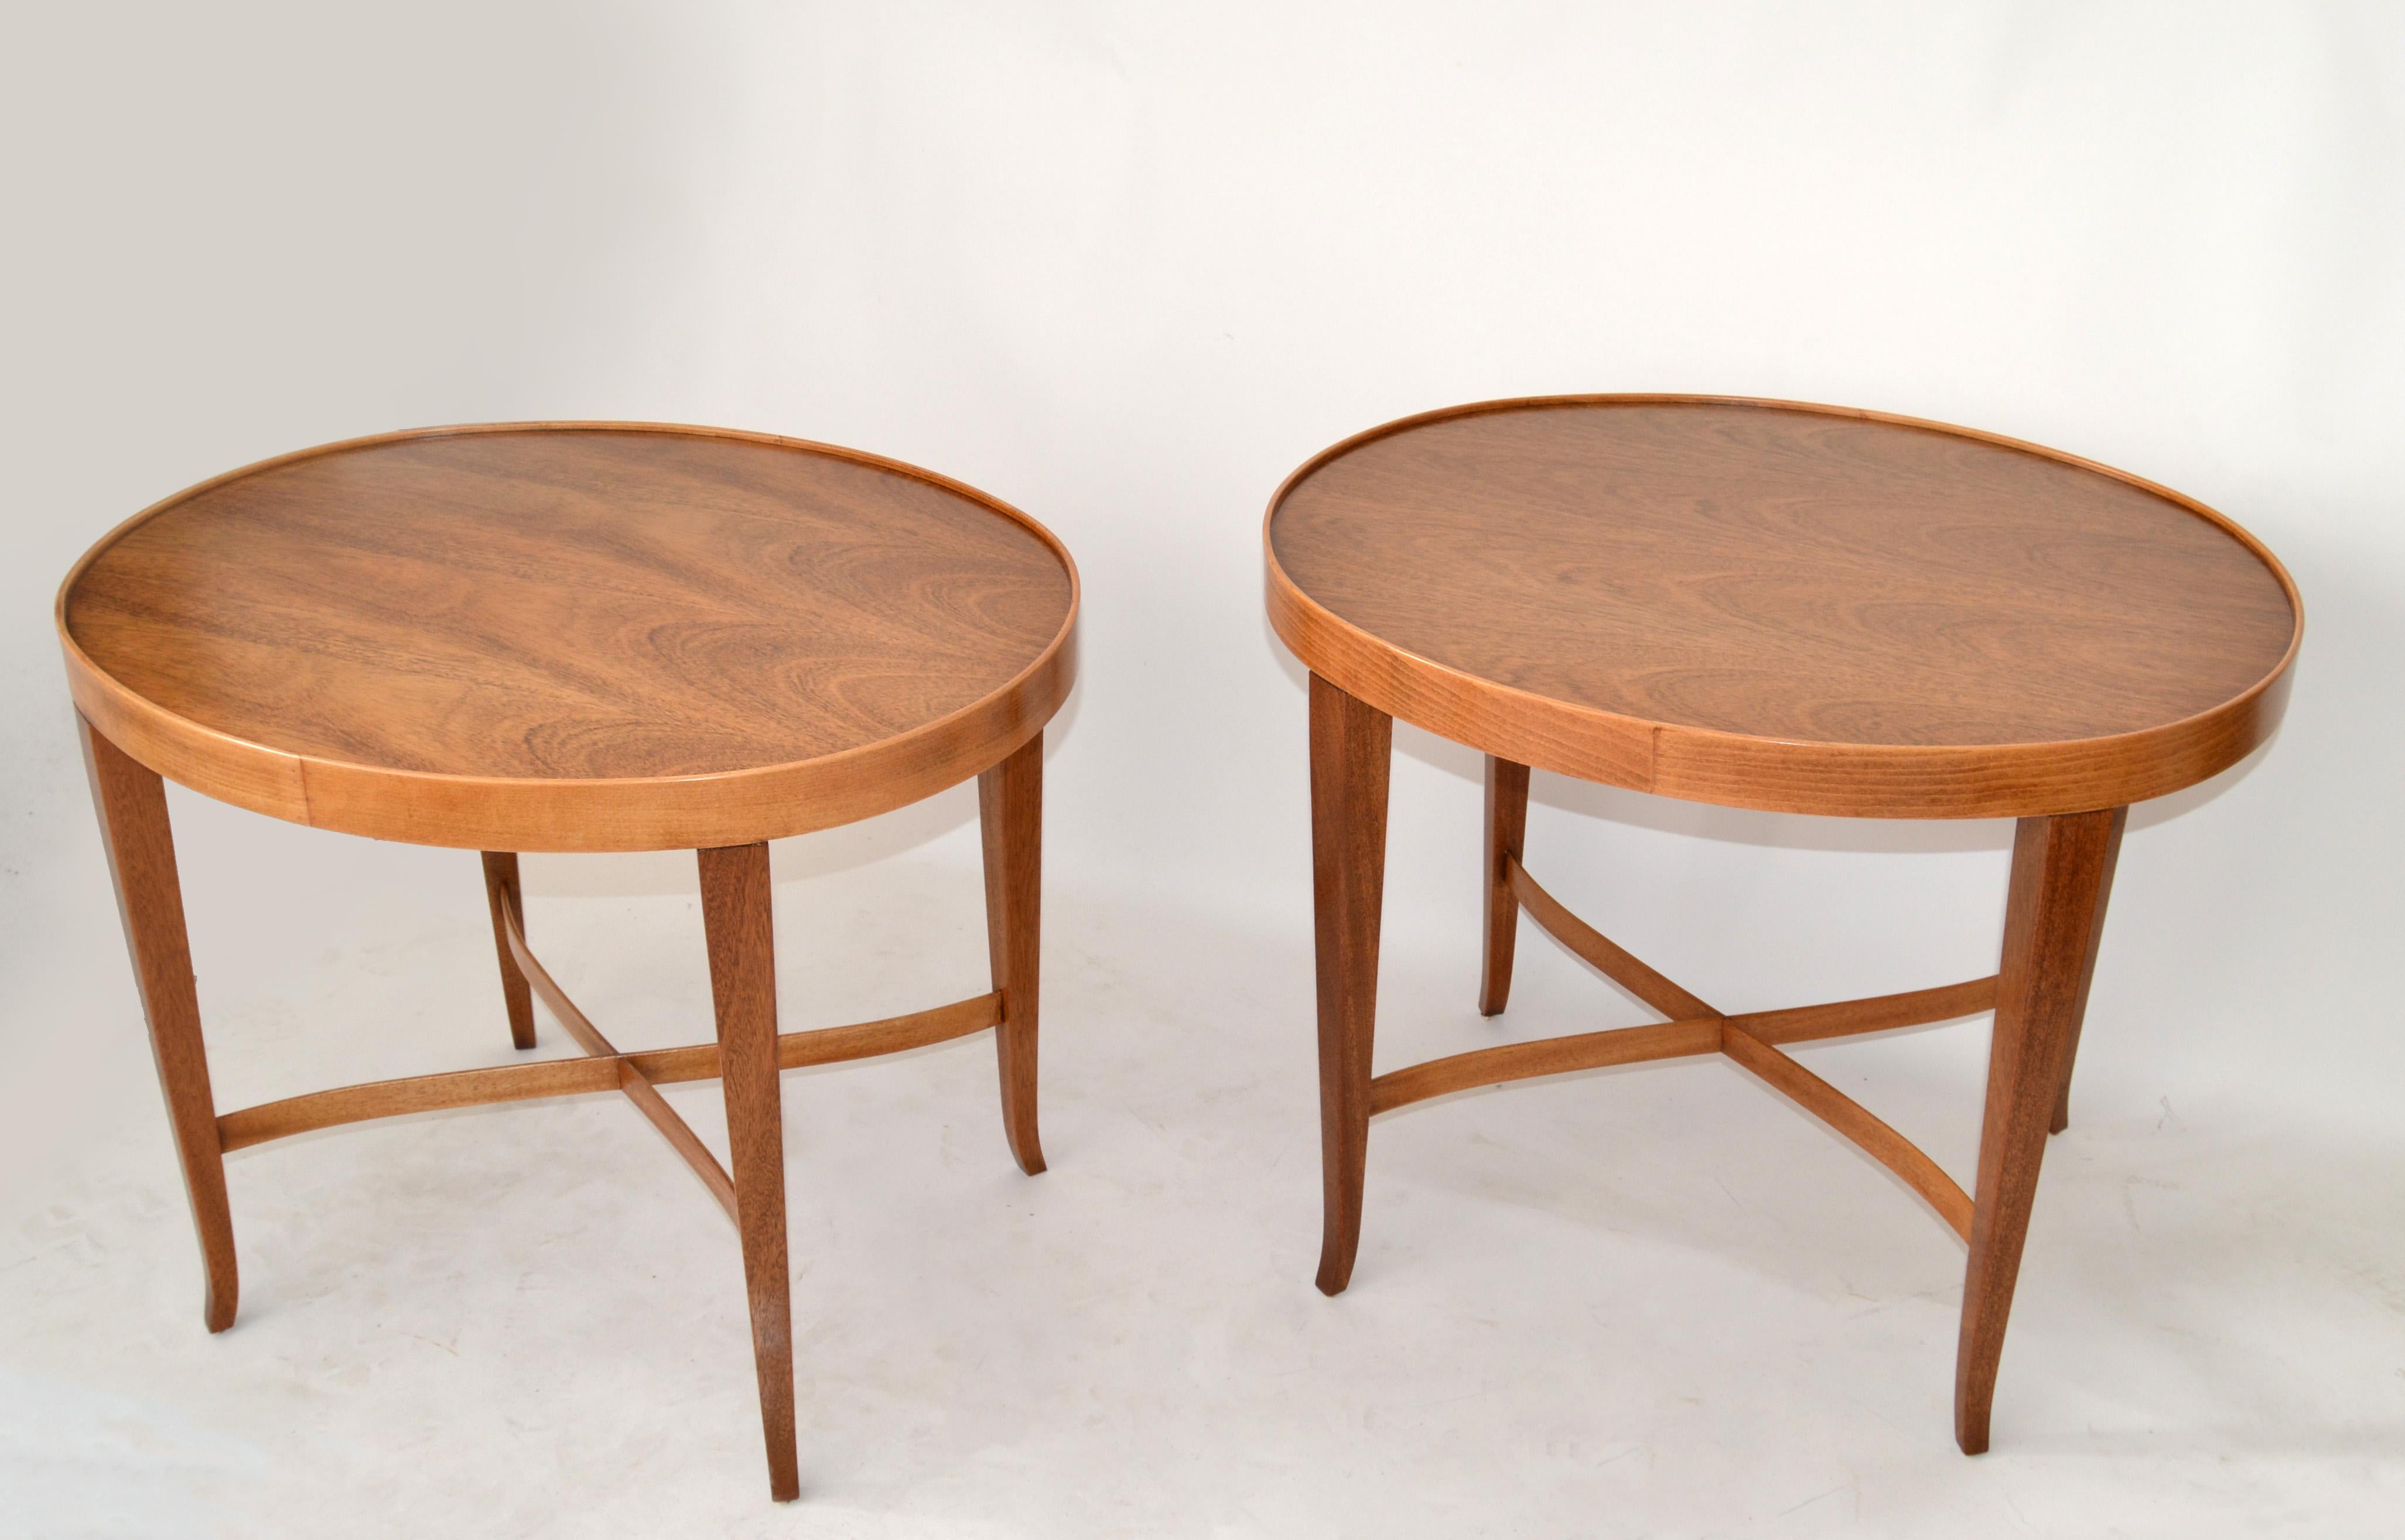 Ein Paar vollständig restaurierte ovale Beistelltische aus Nussbaumholz aus der Barbara Barry Collection, hergestellt in den USA von der Baker Furniture Company.
Mit verbundenen Kreuzstreckern auf der Basis, ovalen Oberteilen und einem Band um den